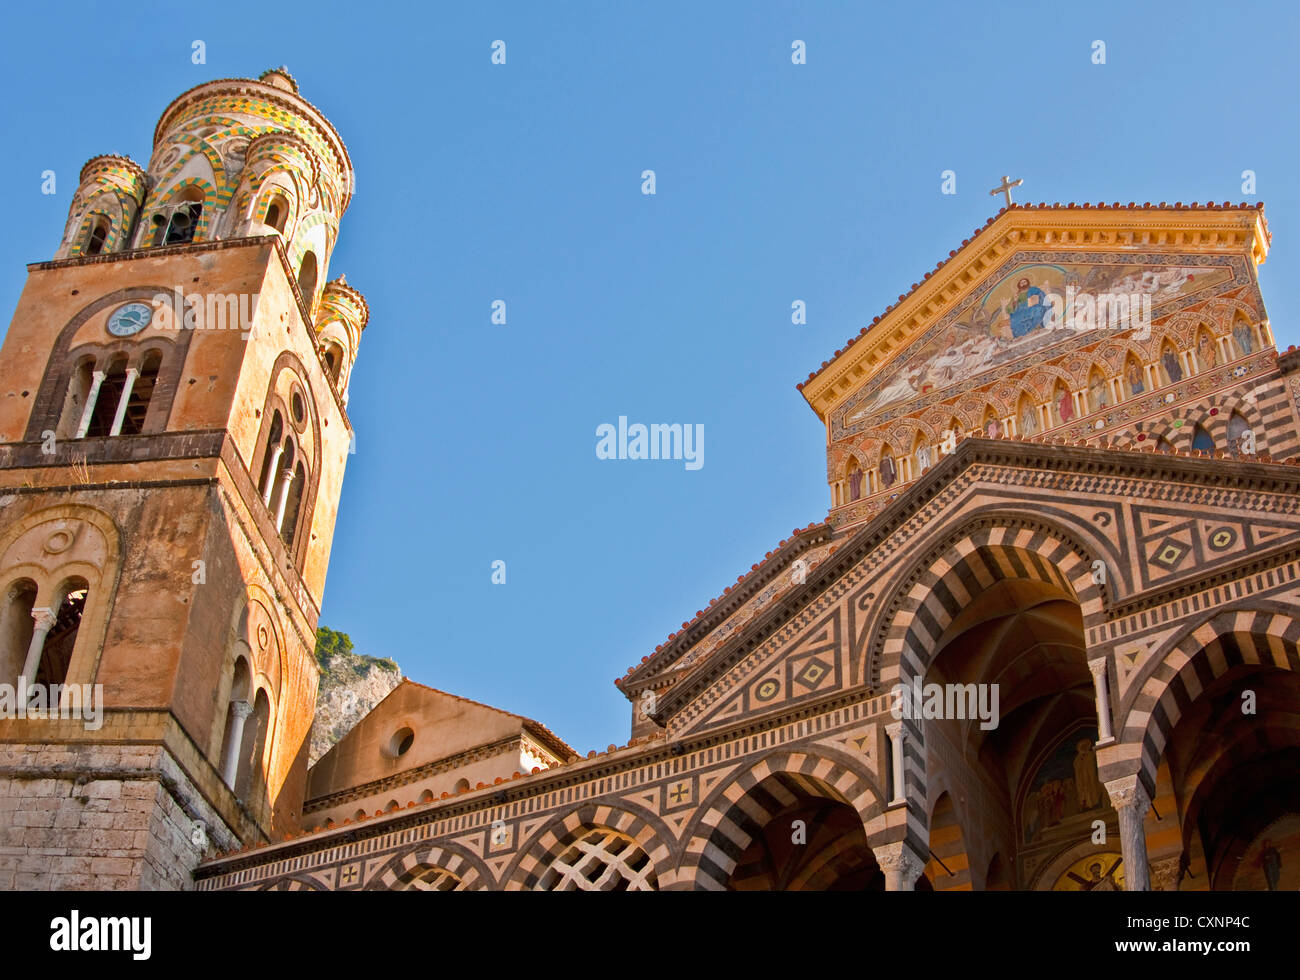 Amalfi Cattedrale di Saint Andrew (Duomo di San Andreas) in Spagnolo Barocco stile architettonico Foto Stock